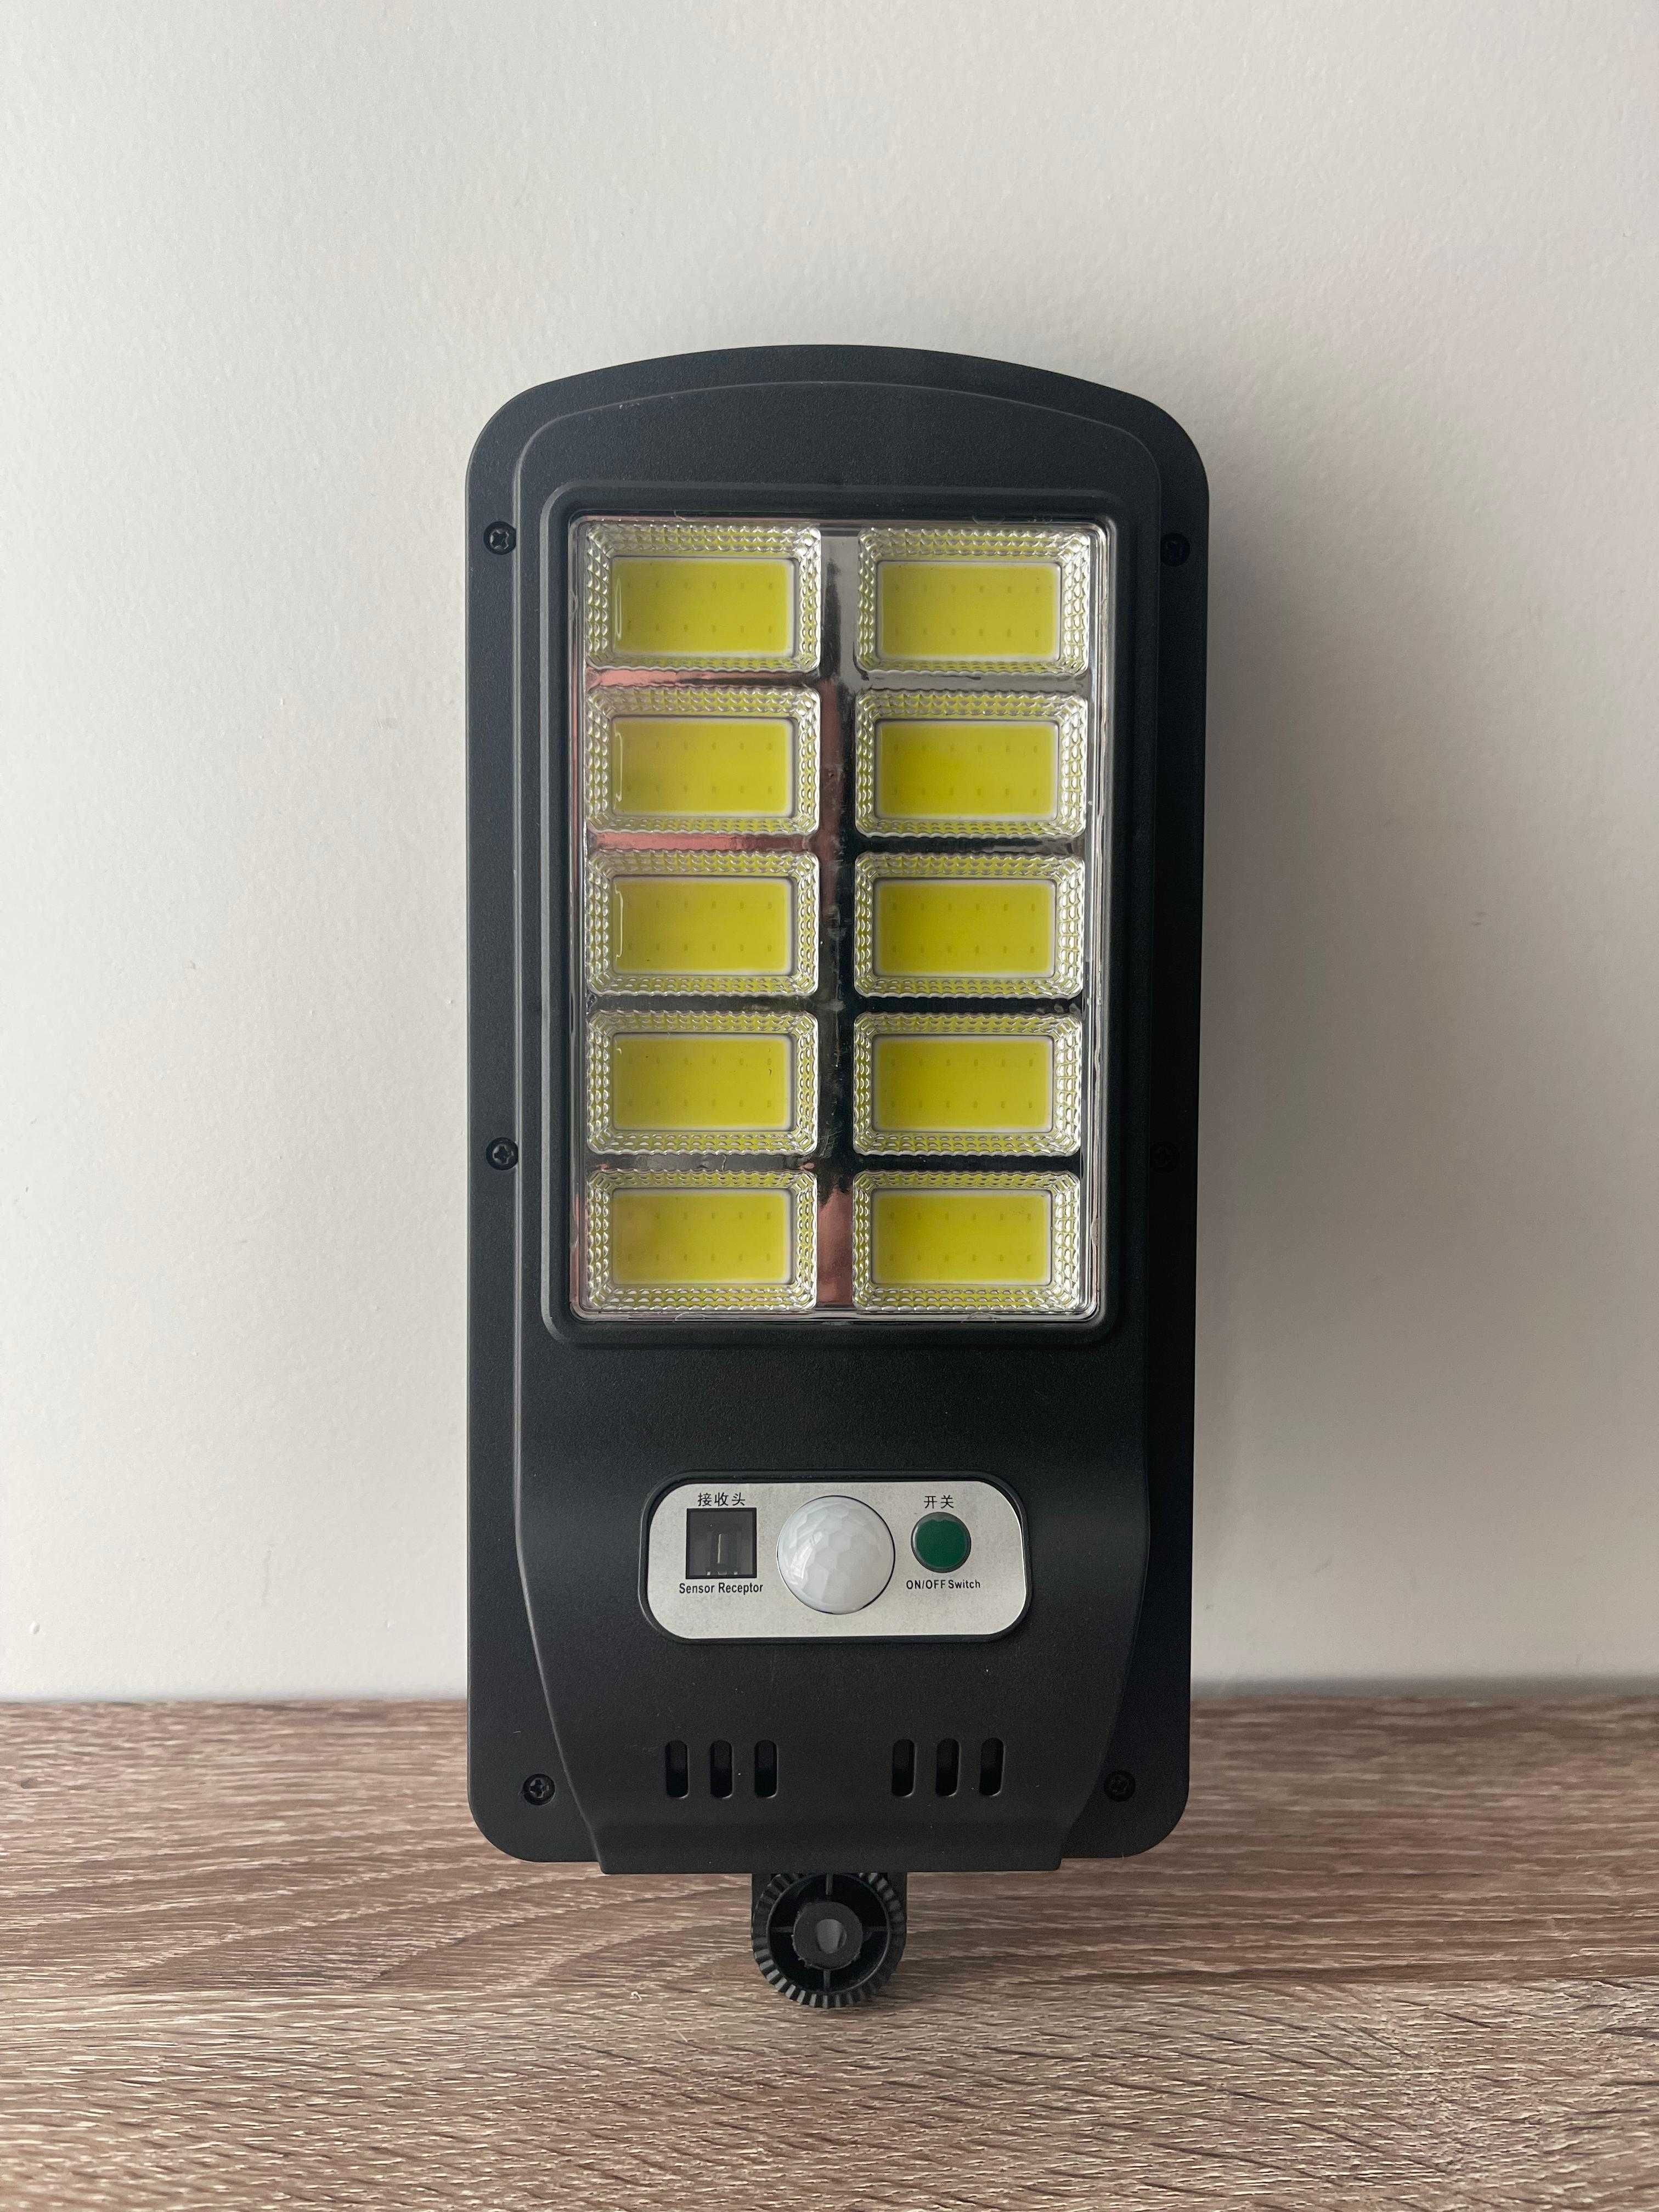 LAMPA LED CU INCARCARE SOLARA 120 Led/ 10 COB cu senzor si telecomanda